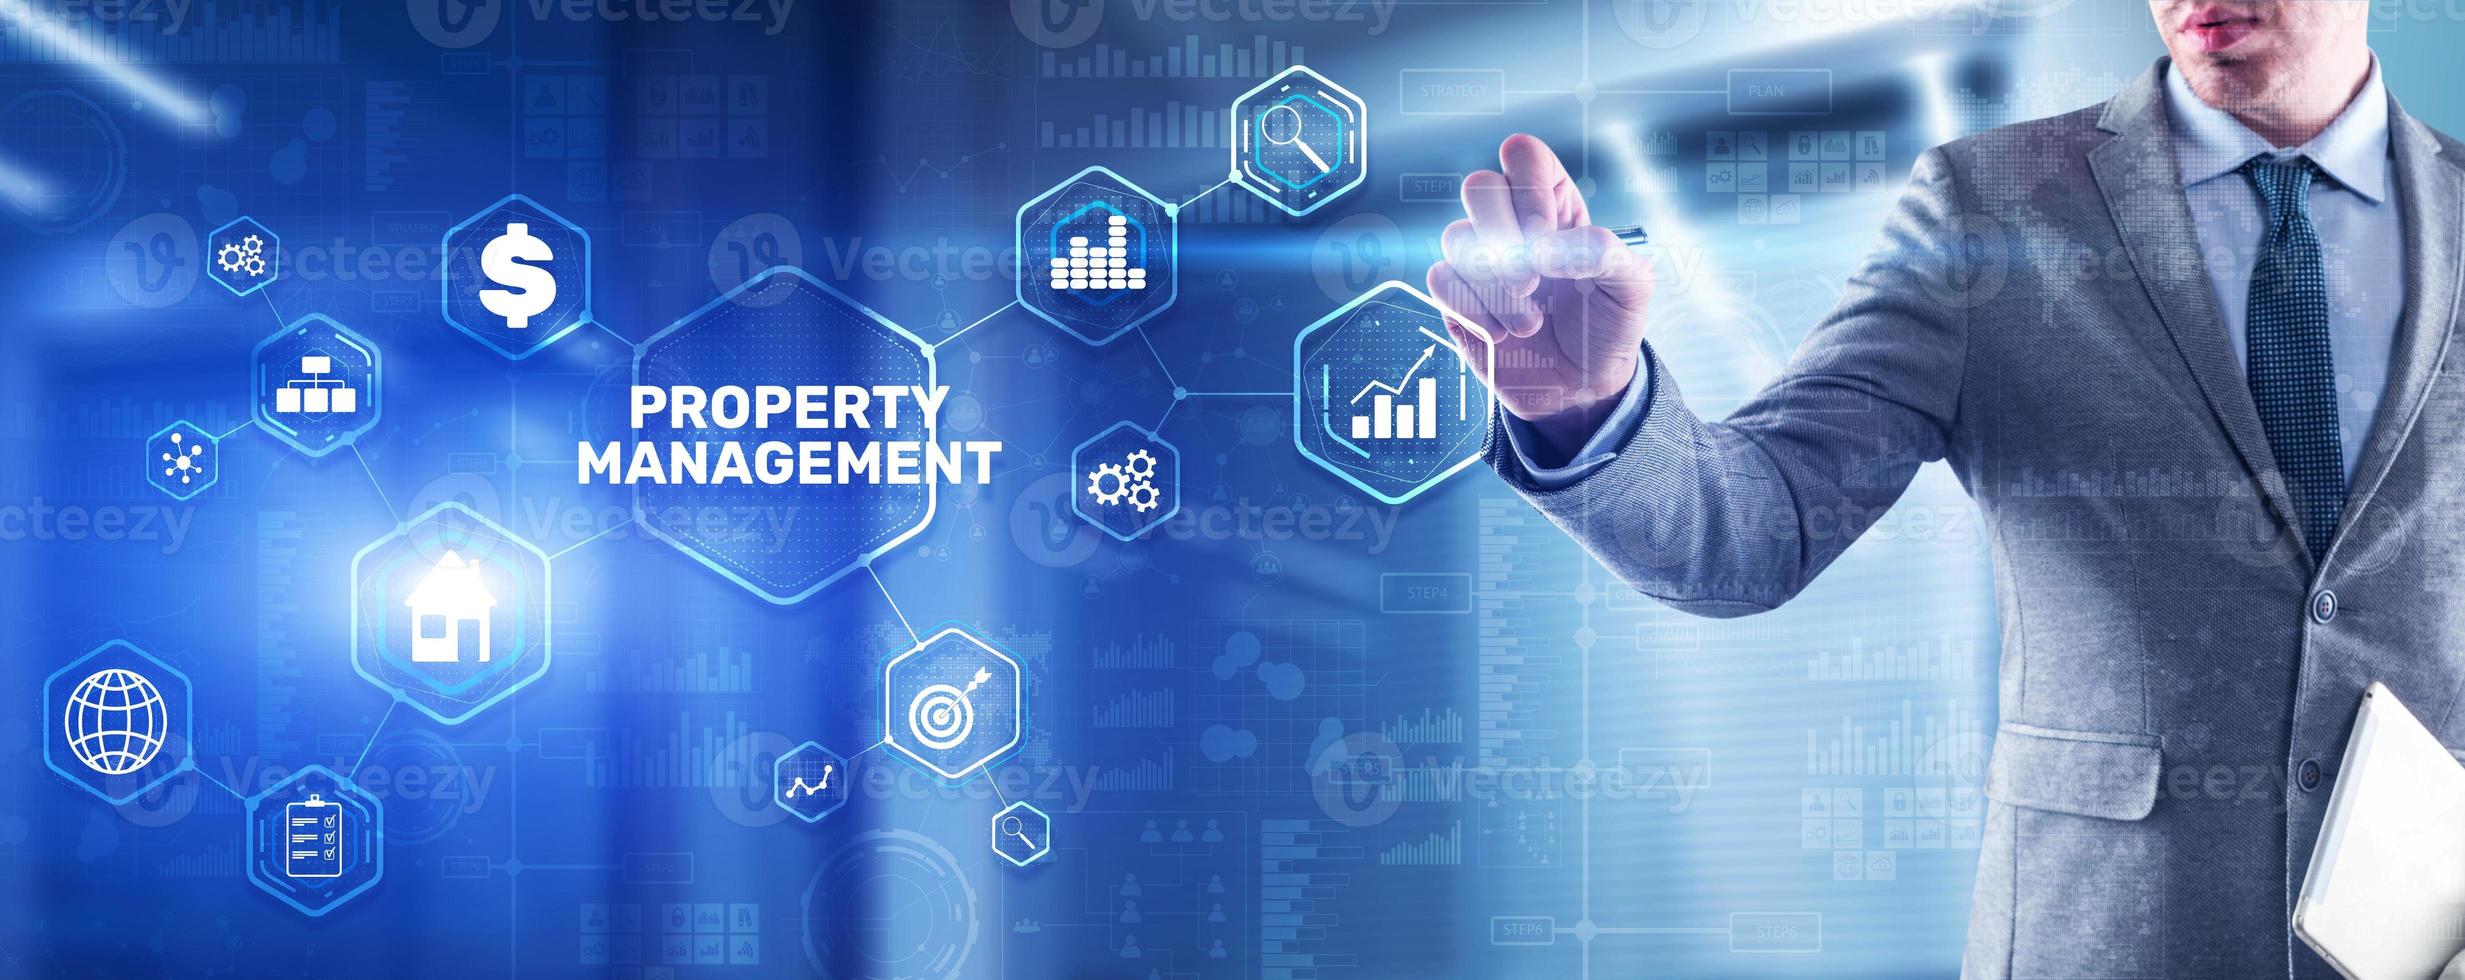 gestione della proprietà. manutenzione e supervisione di beni immobili e proprietà fisiche foto